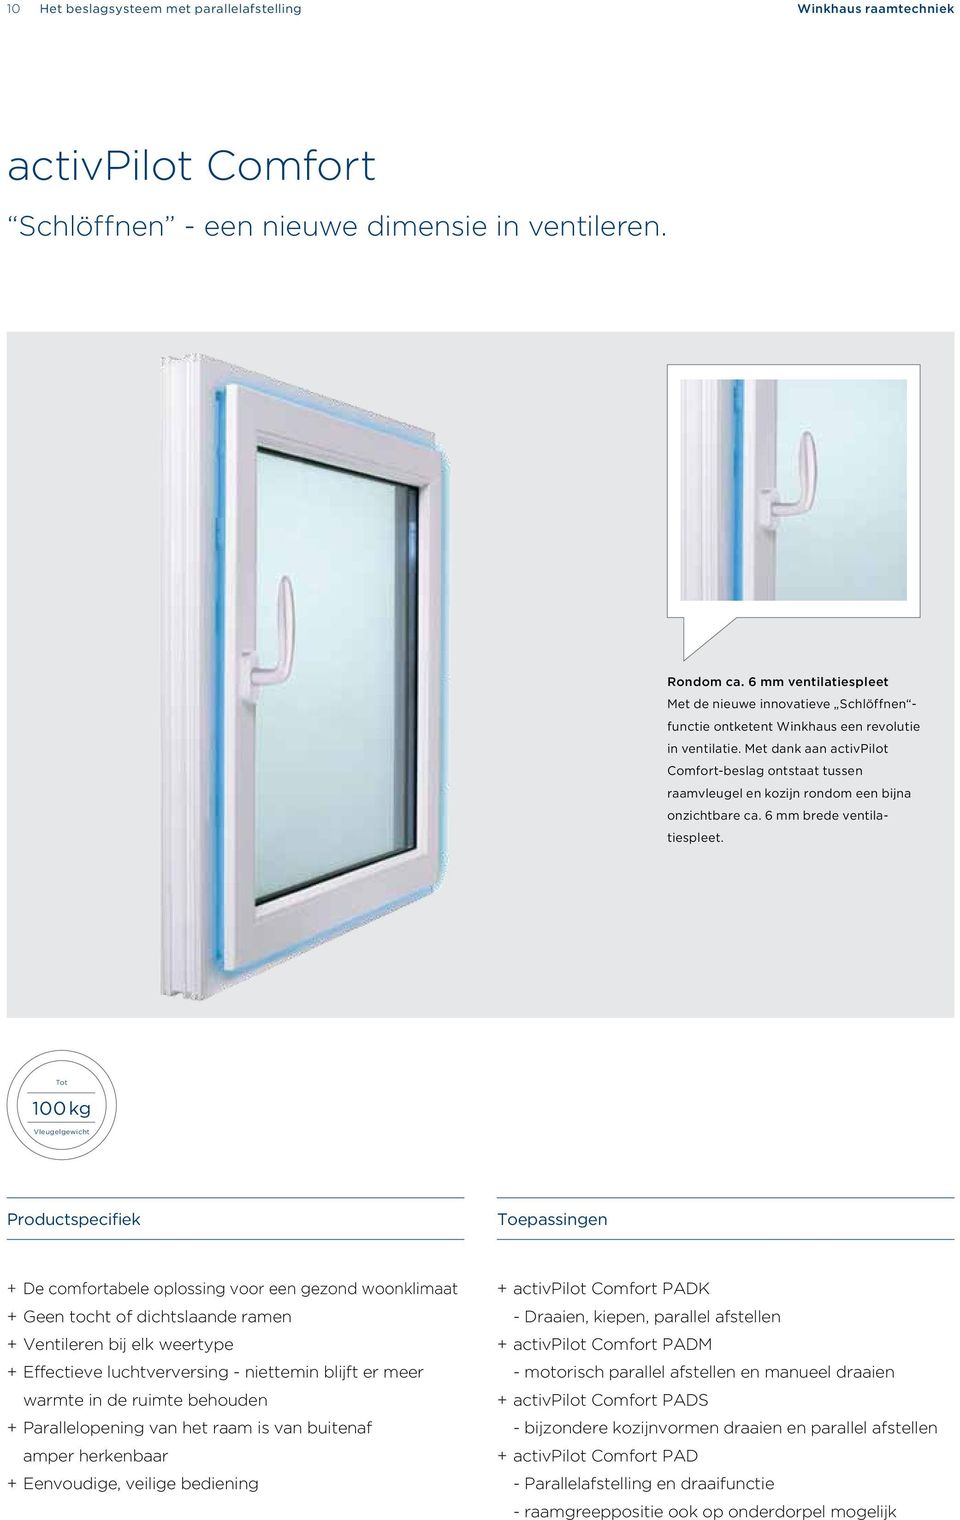 Met dank aan activpilot Comfort-beslag ontstaat tussen raamvleugel en kozijn rondom een bijna onzichtbare ca. 6 mm brede ventilatiespleet.